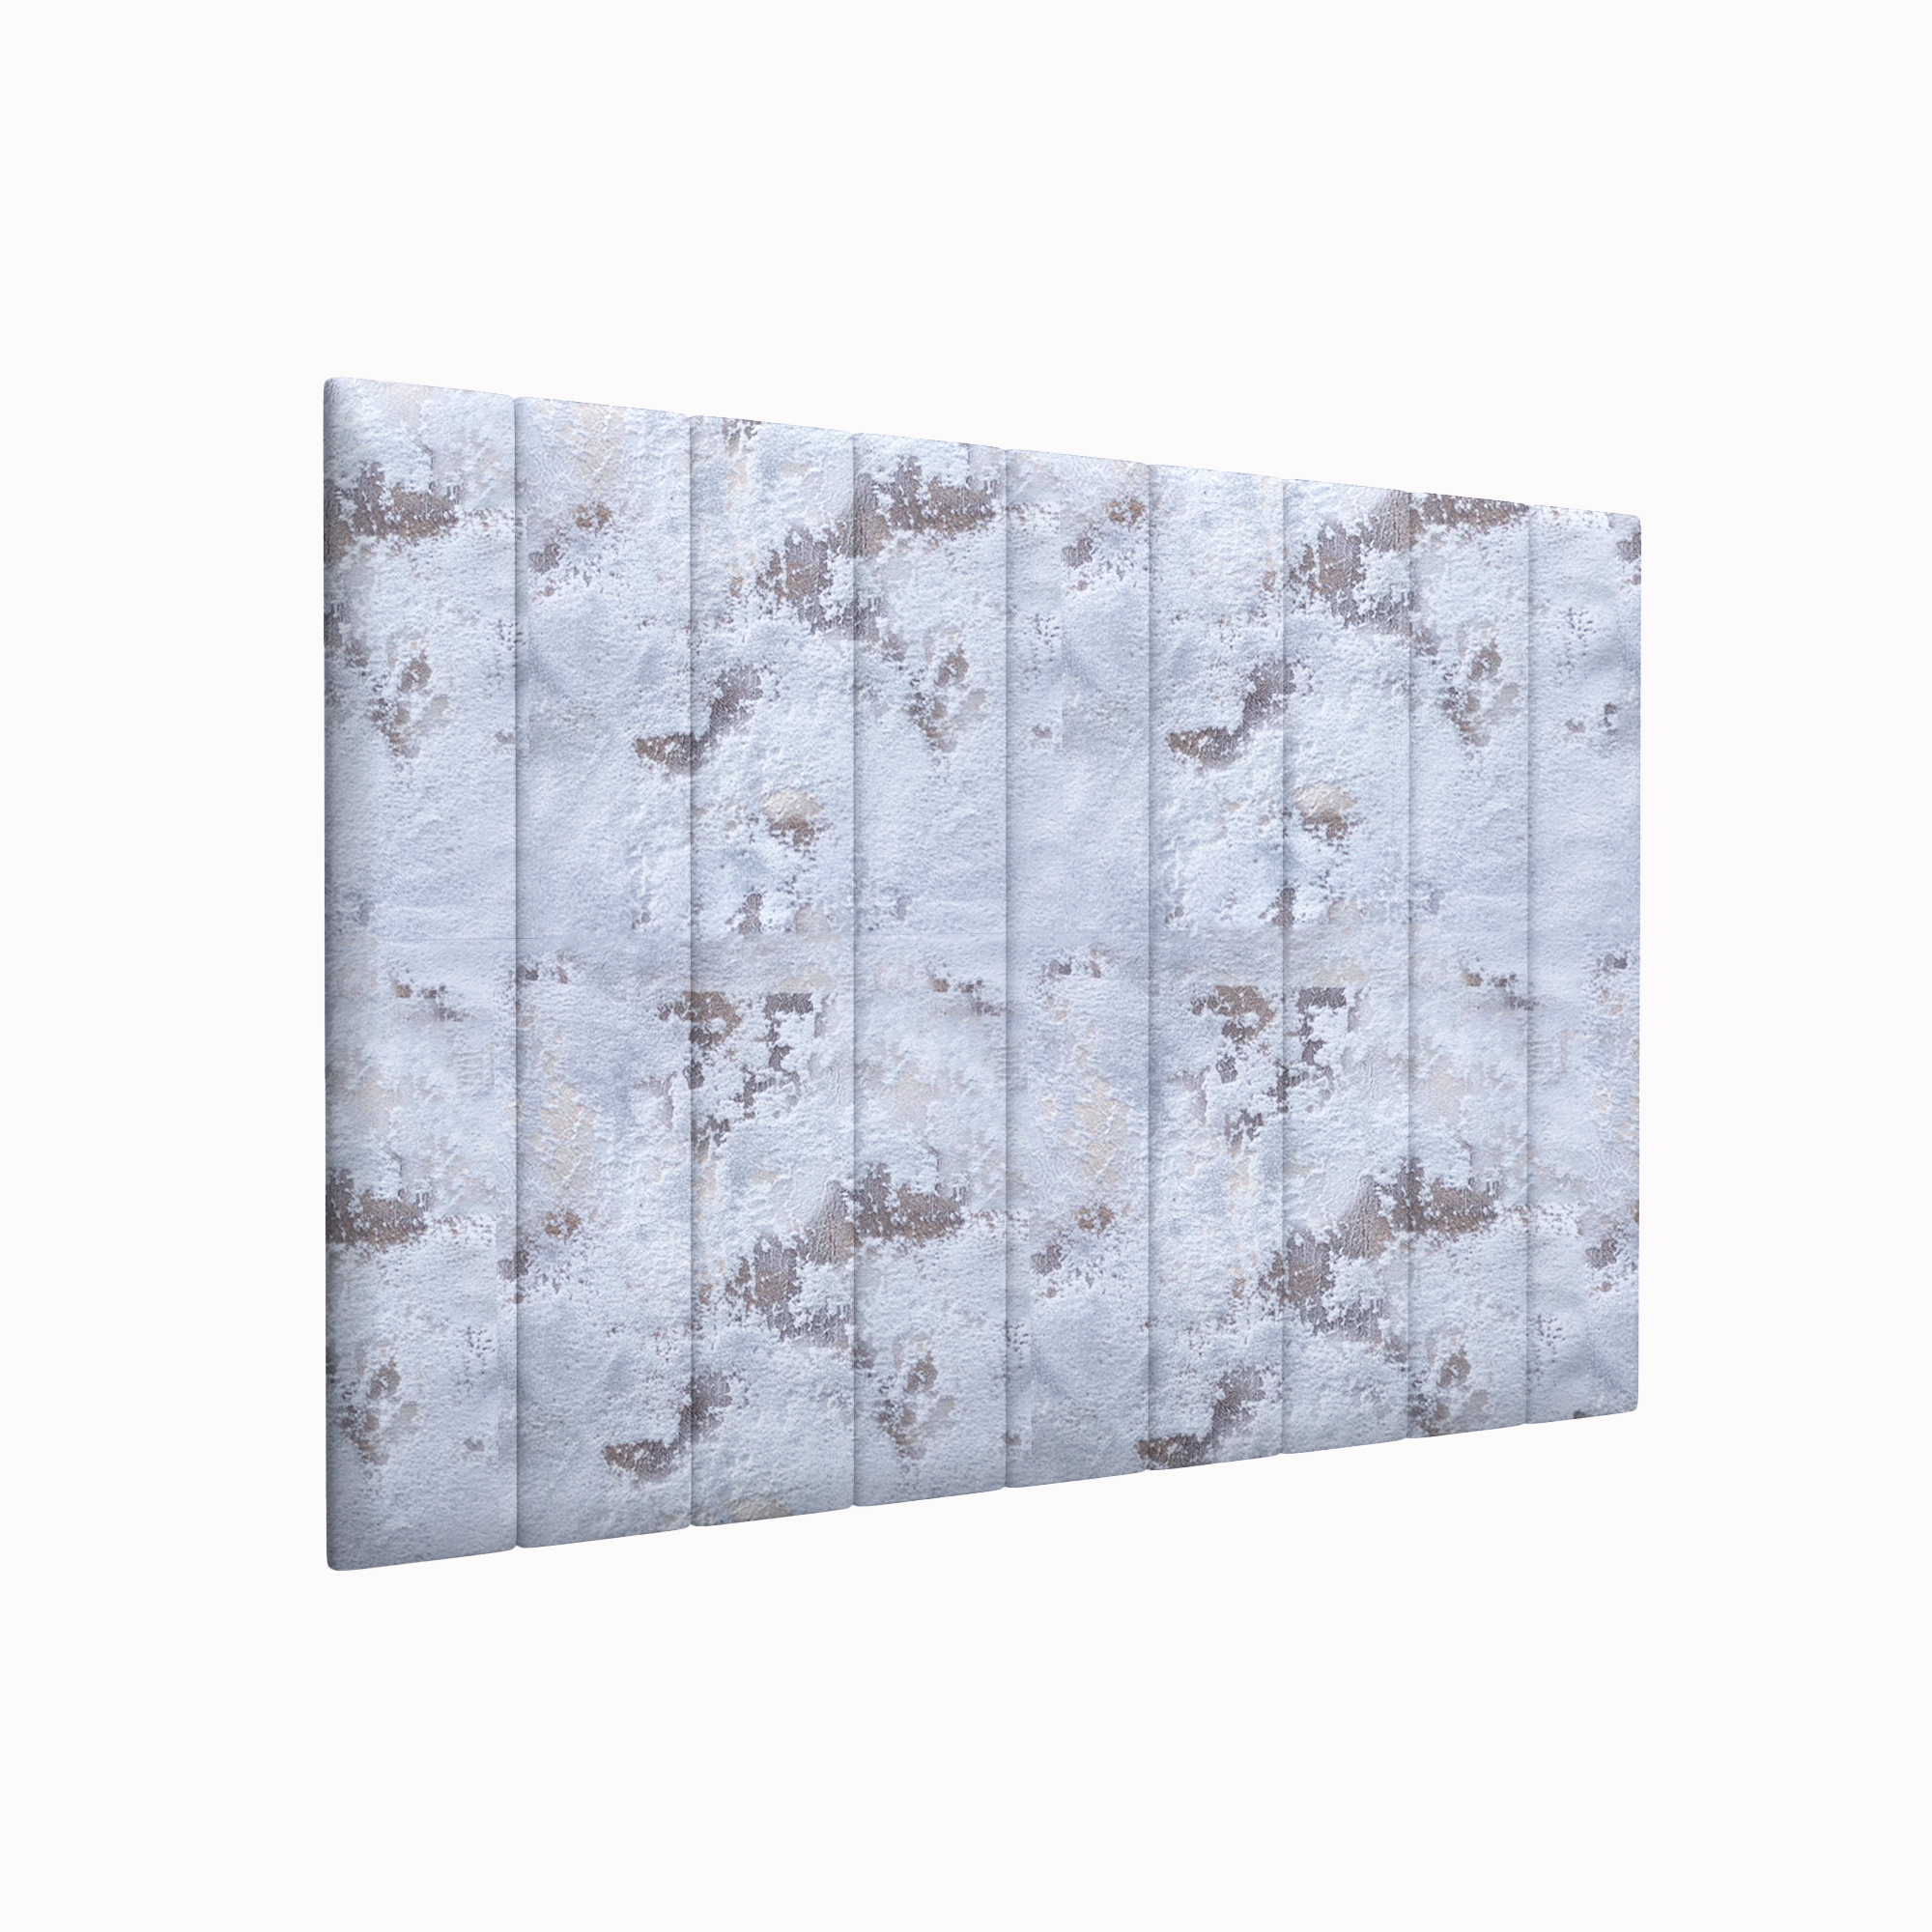 Мягкие стеновые панели Shtorm Sky blue 15х90 см 4 шт. мягкие кубики плюшики весёлая азбука